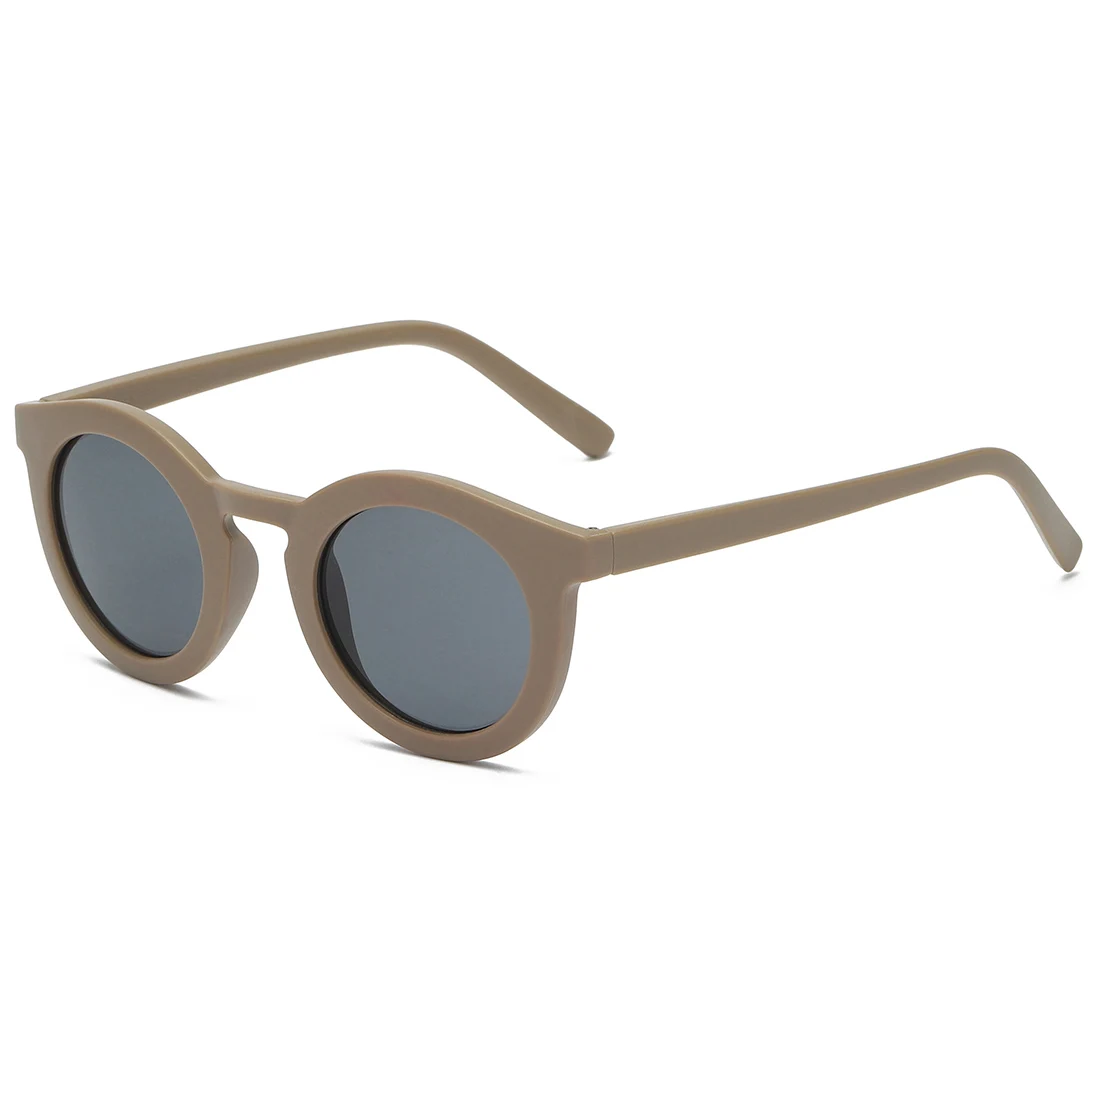 

2022 New Round Frame Glasses Trend Children's Sunglasses Fashion Sunshade Custom Sunglasses Kids For Kids Uv400